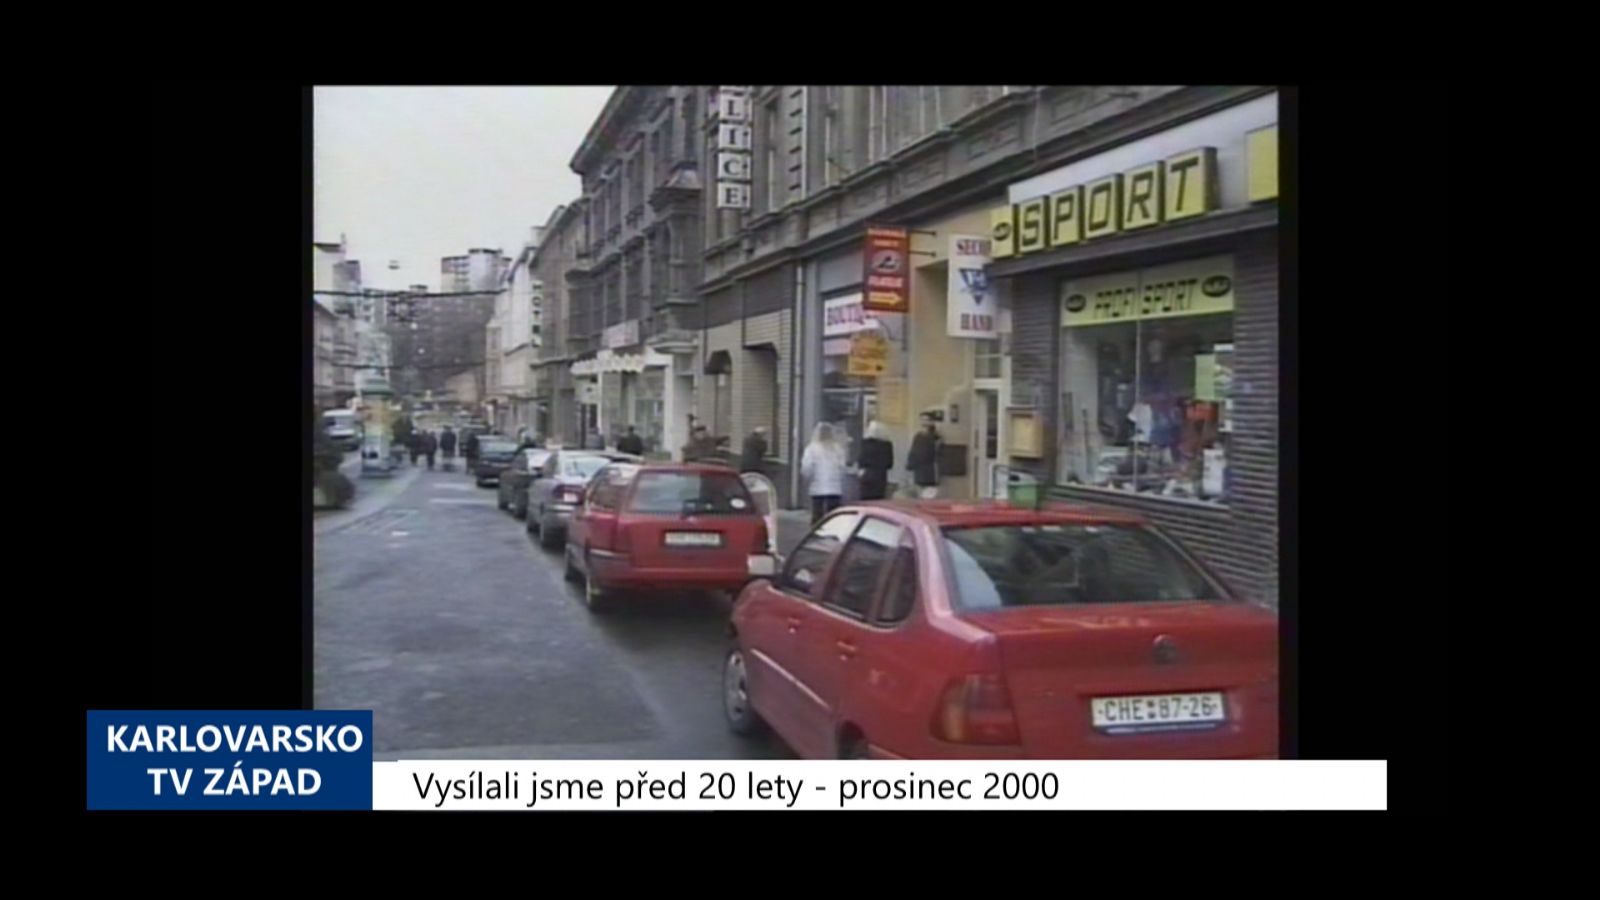 2000 – Cheb: Rekonstrukce pěší zóny se uskuteční až po získání dotace (TV Západ)